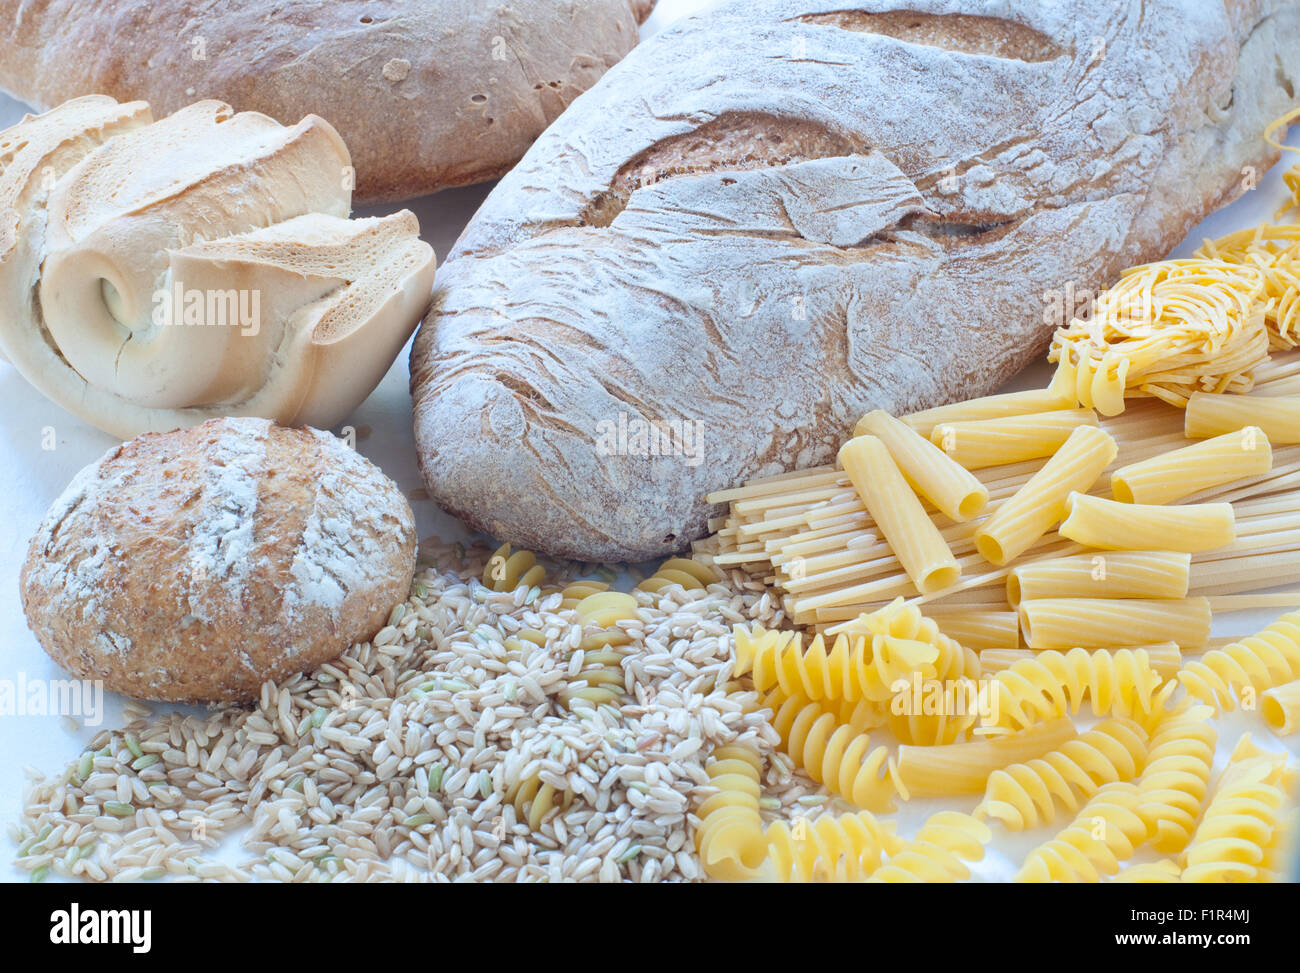 Différentes variétés de pâtes italiennes et du pain fait maison Banque D'Images